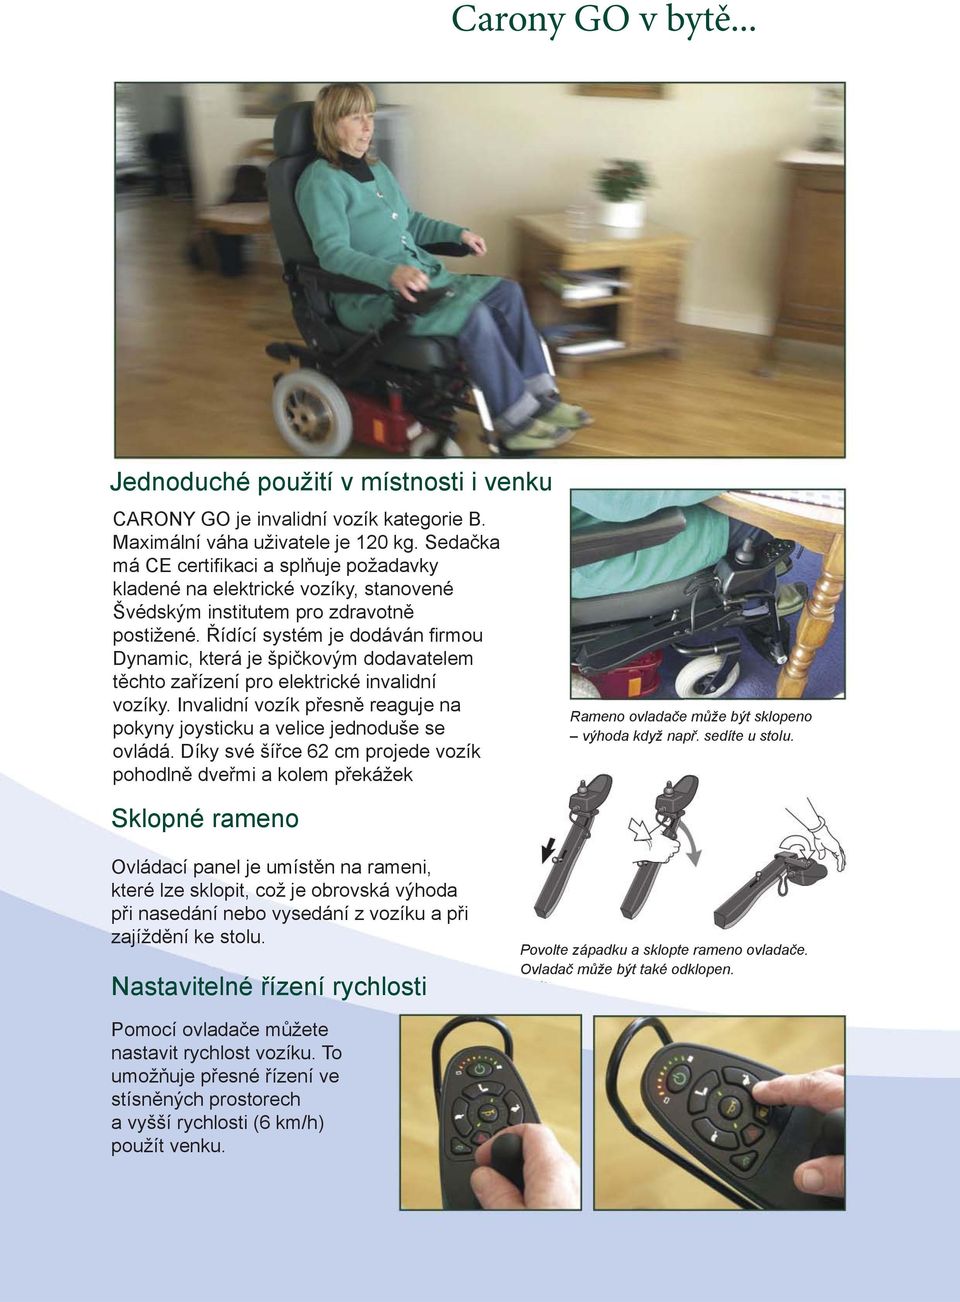 Řídící systém je dodáván fi rmou Dynamic, která je špičkovým dodavatelem těchto zařízení pro elektrické invalidní vozíky.